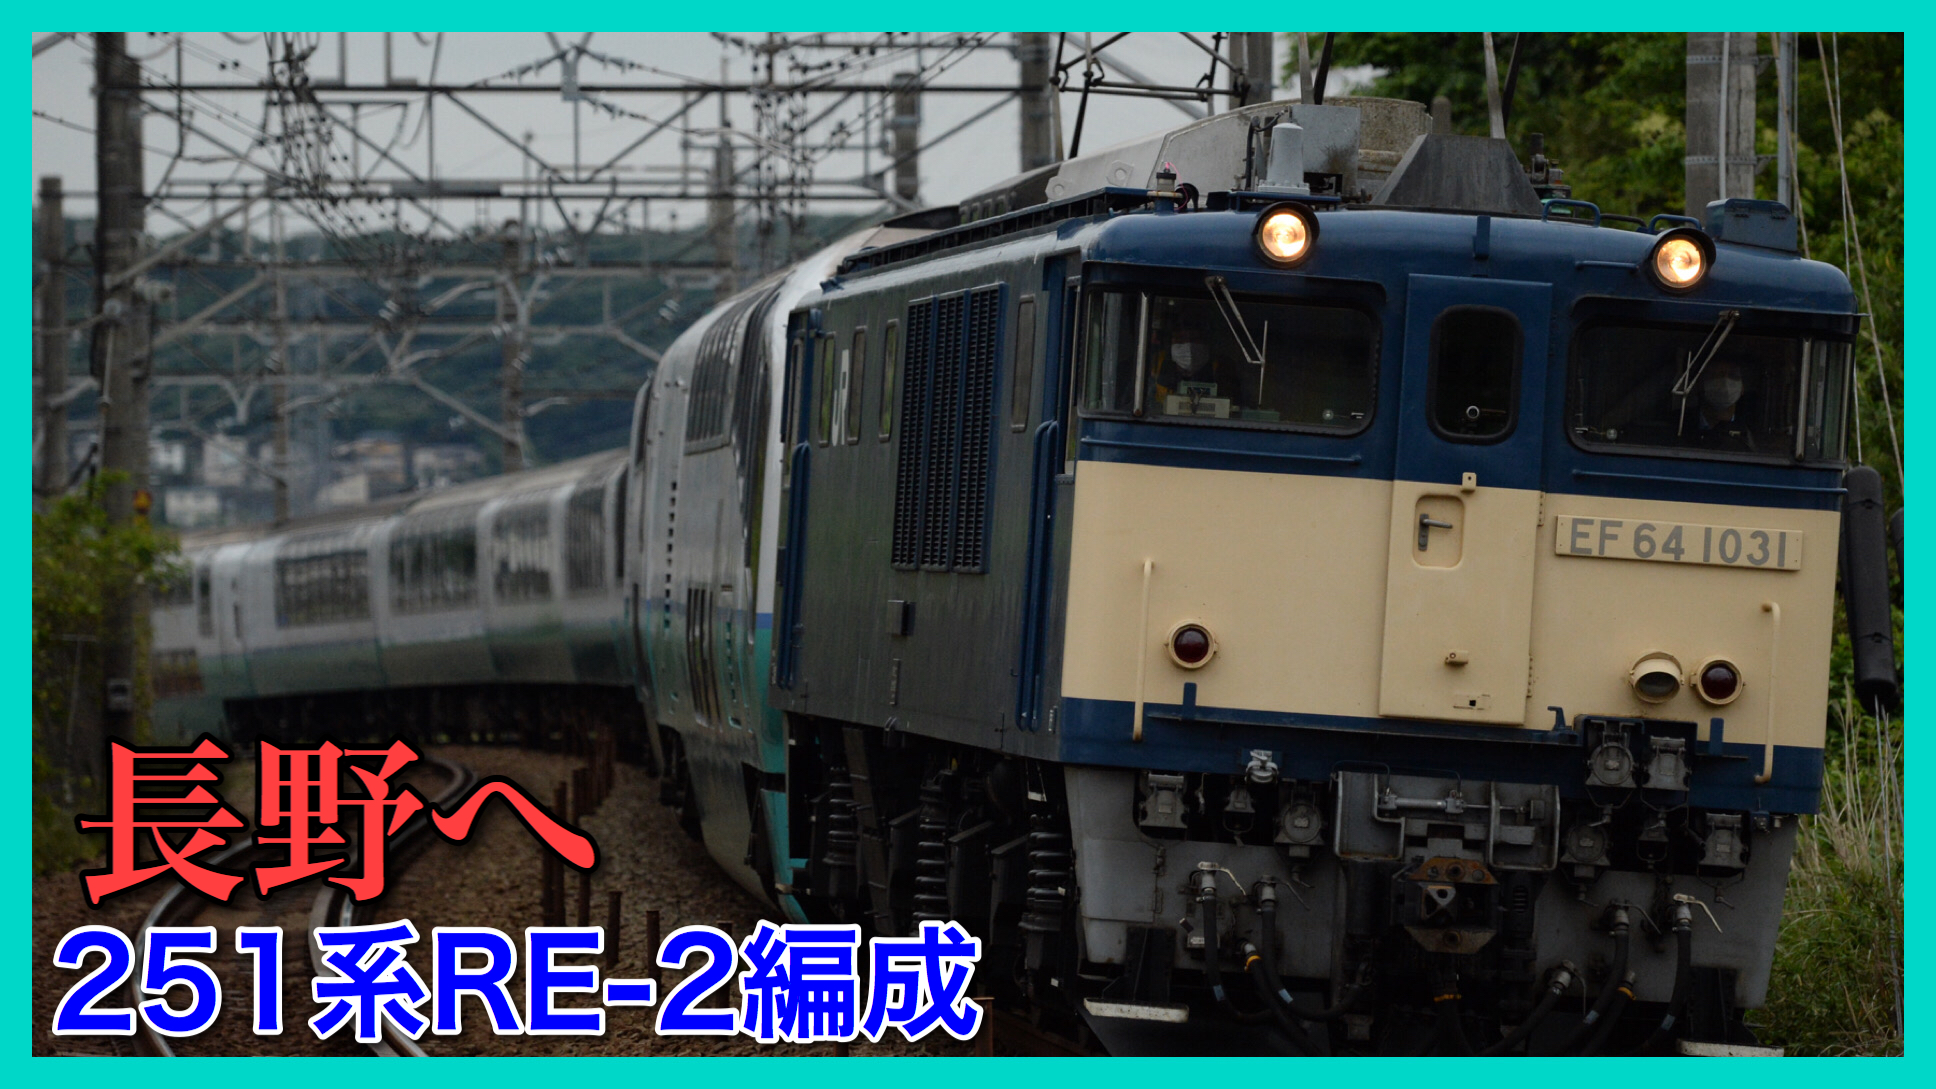 スーパービュー踊り子 251系re 2編成 廃車のため配給輸送で長野へ 鉄道ファンの待合室